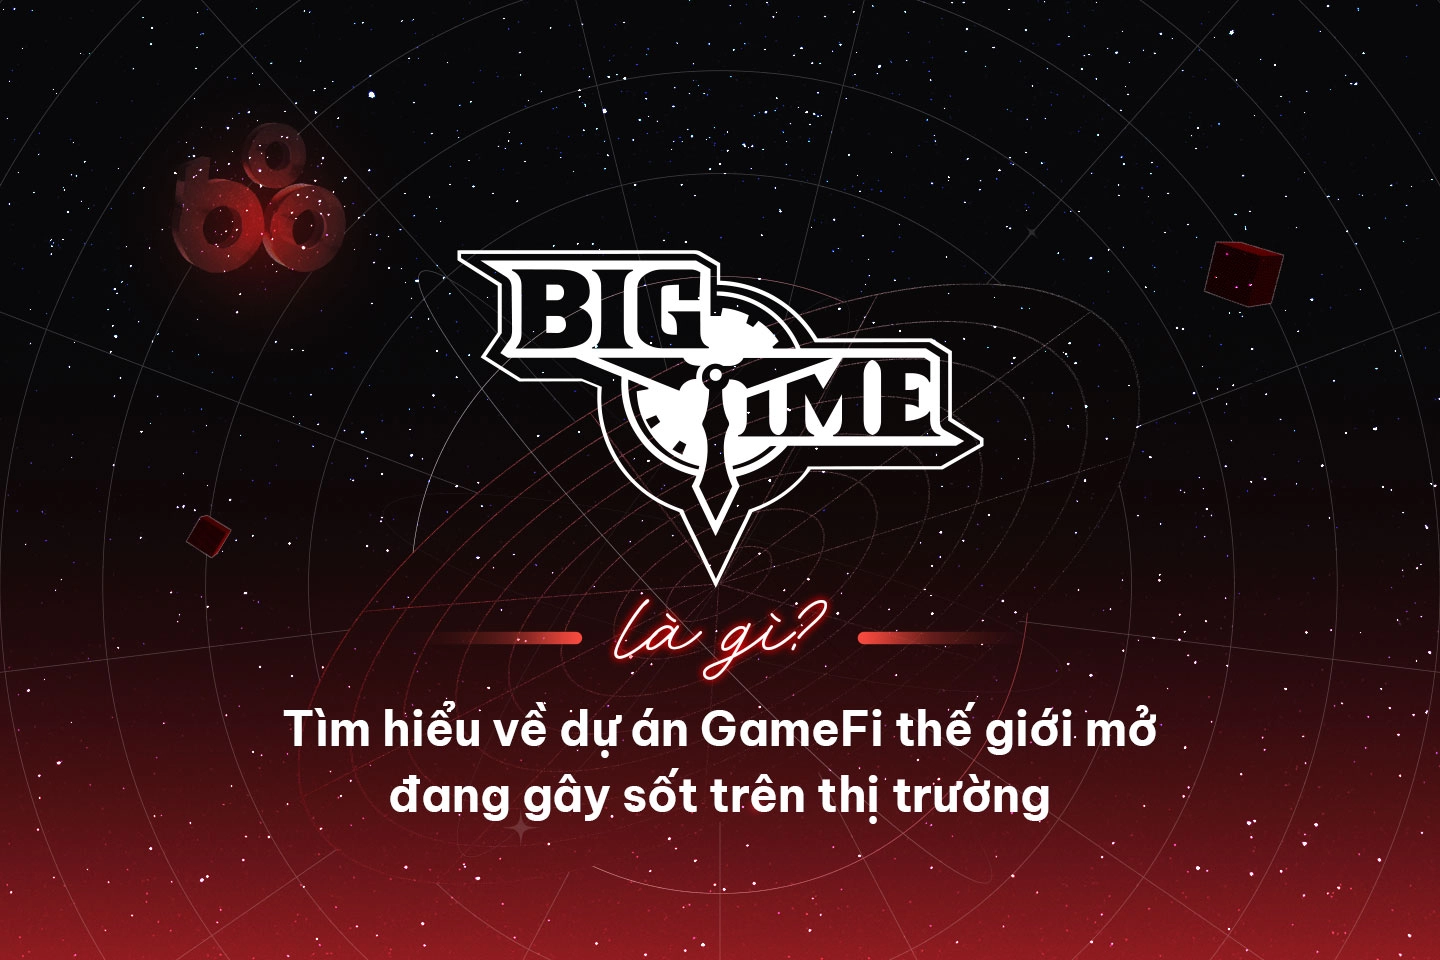 Big Time là gì? Dự án GameFi cực hot năm 2023